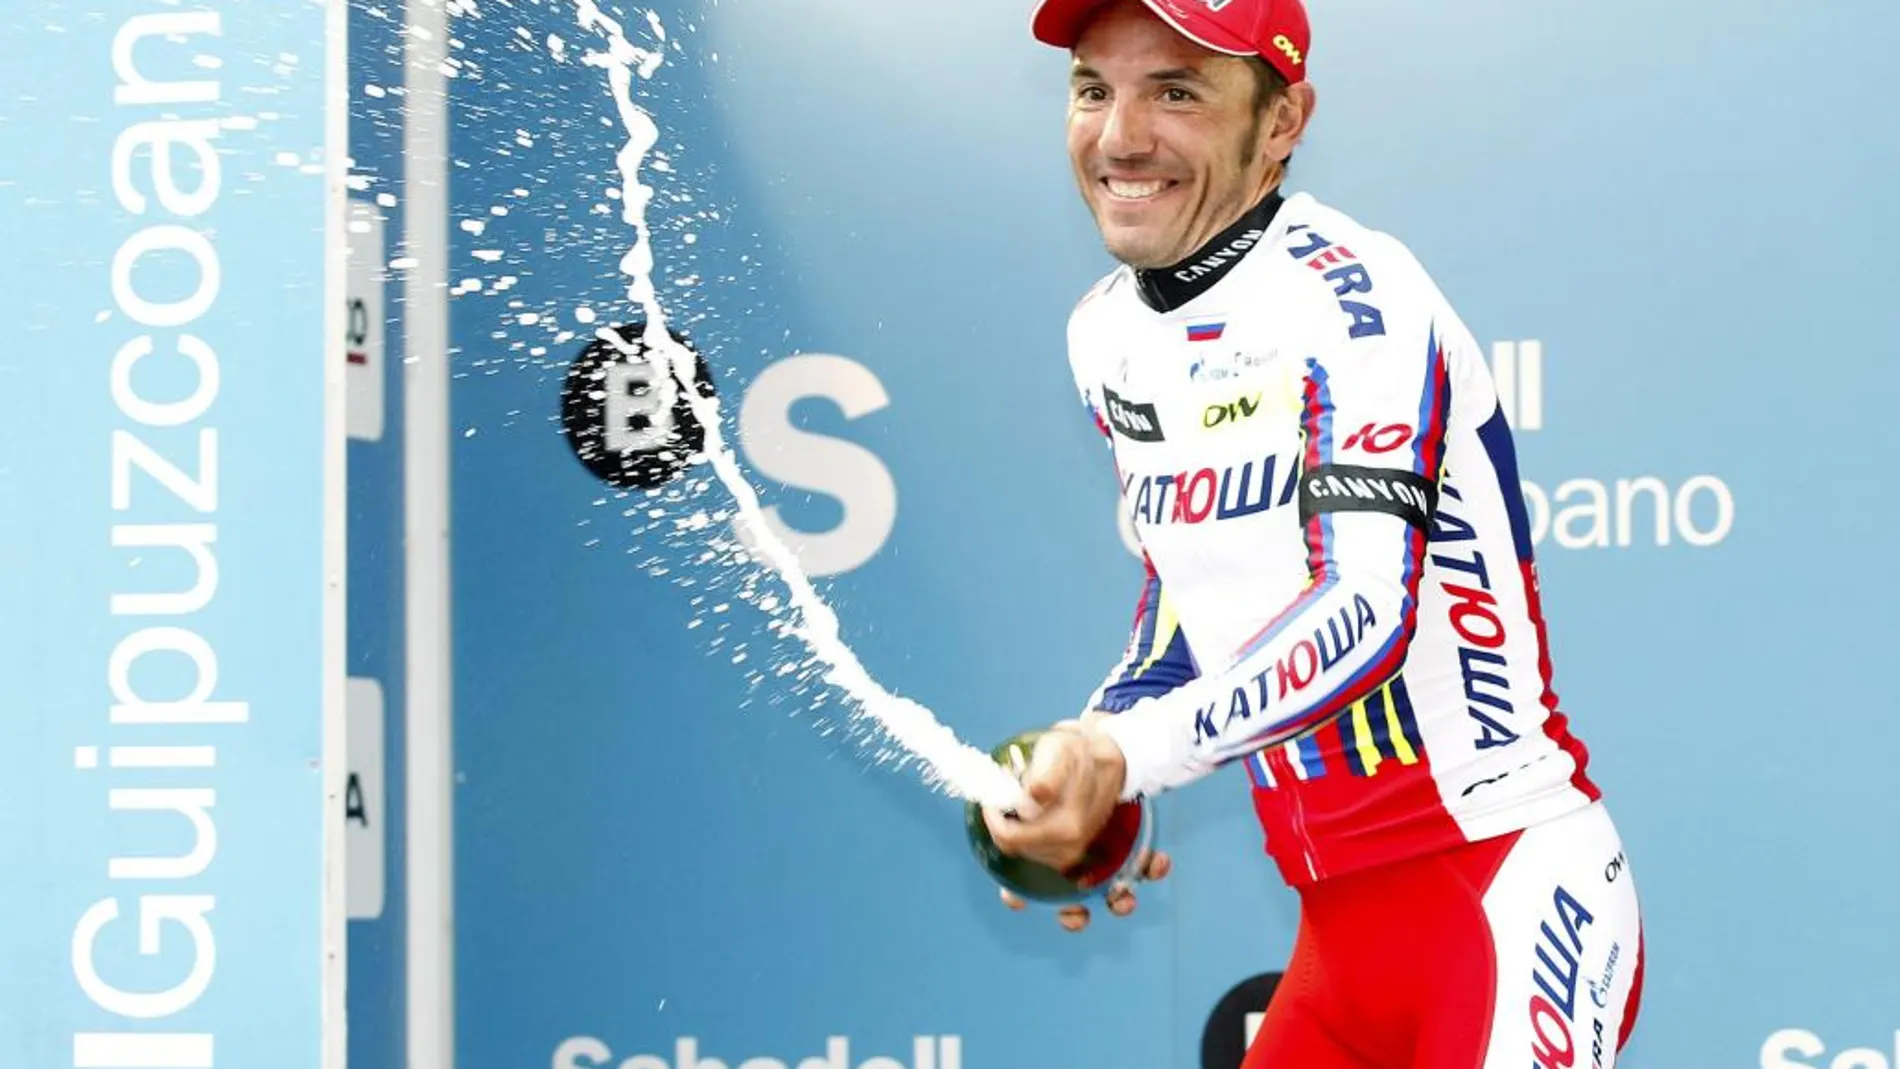 El ciclista catalán Joaquim 'Purito' Rodríguez (Katusha) en el podio